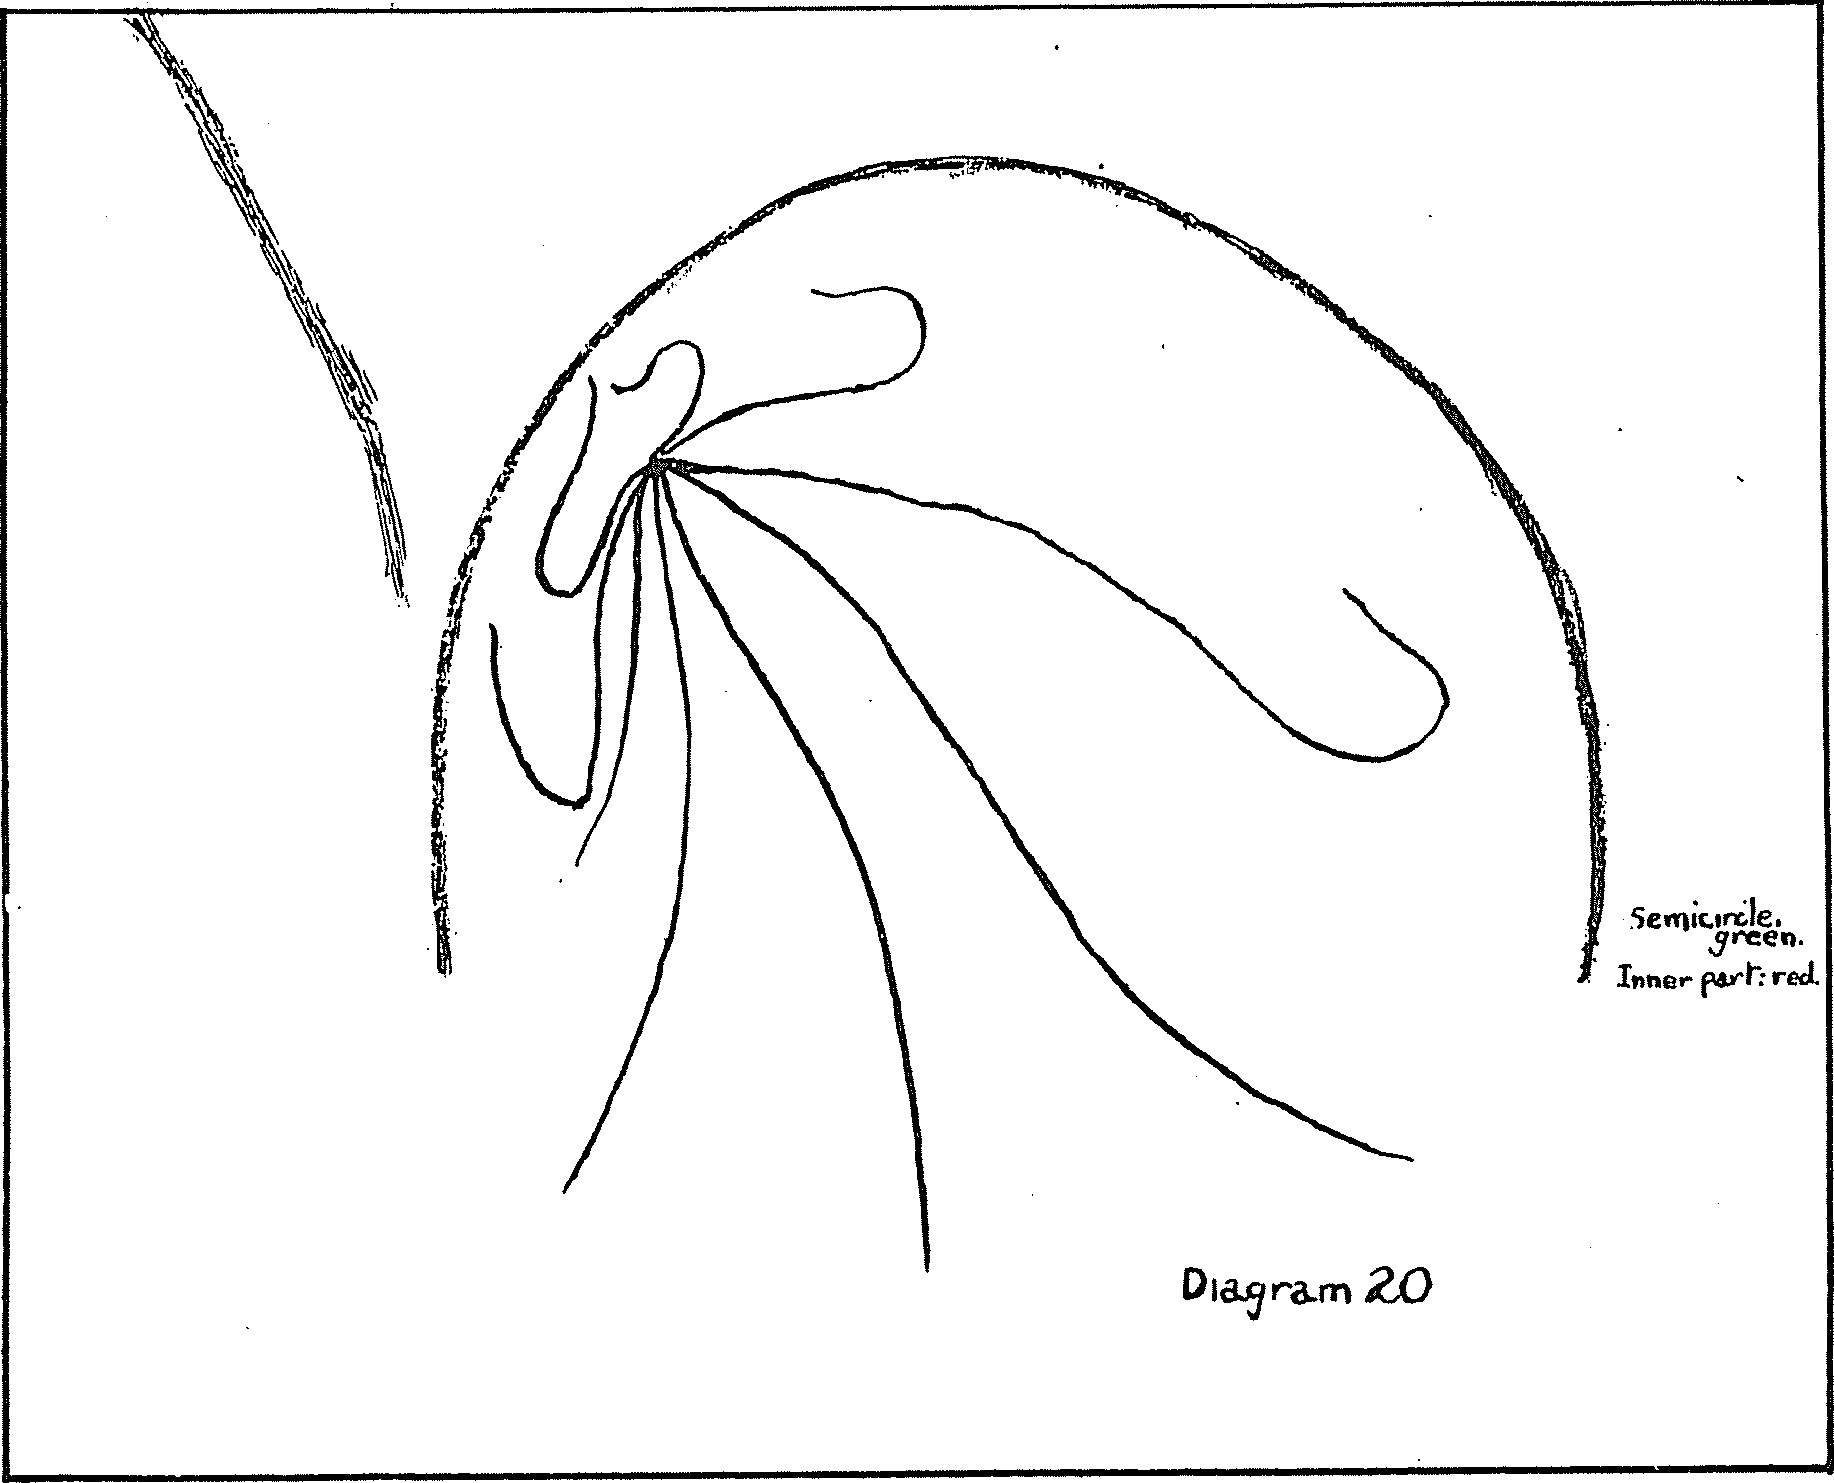 Diagram V